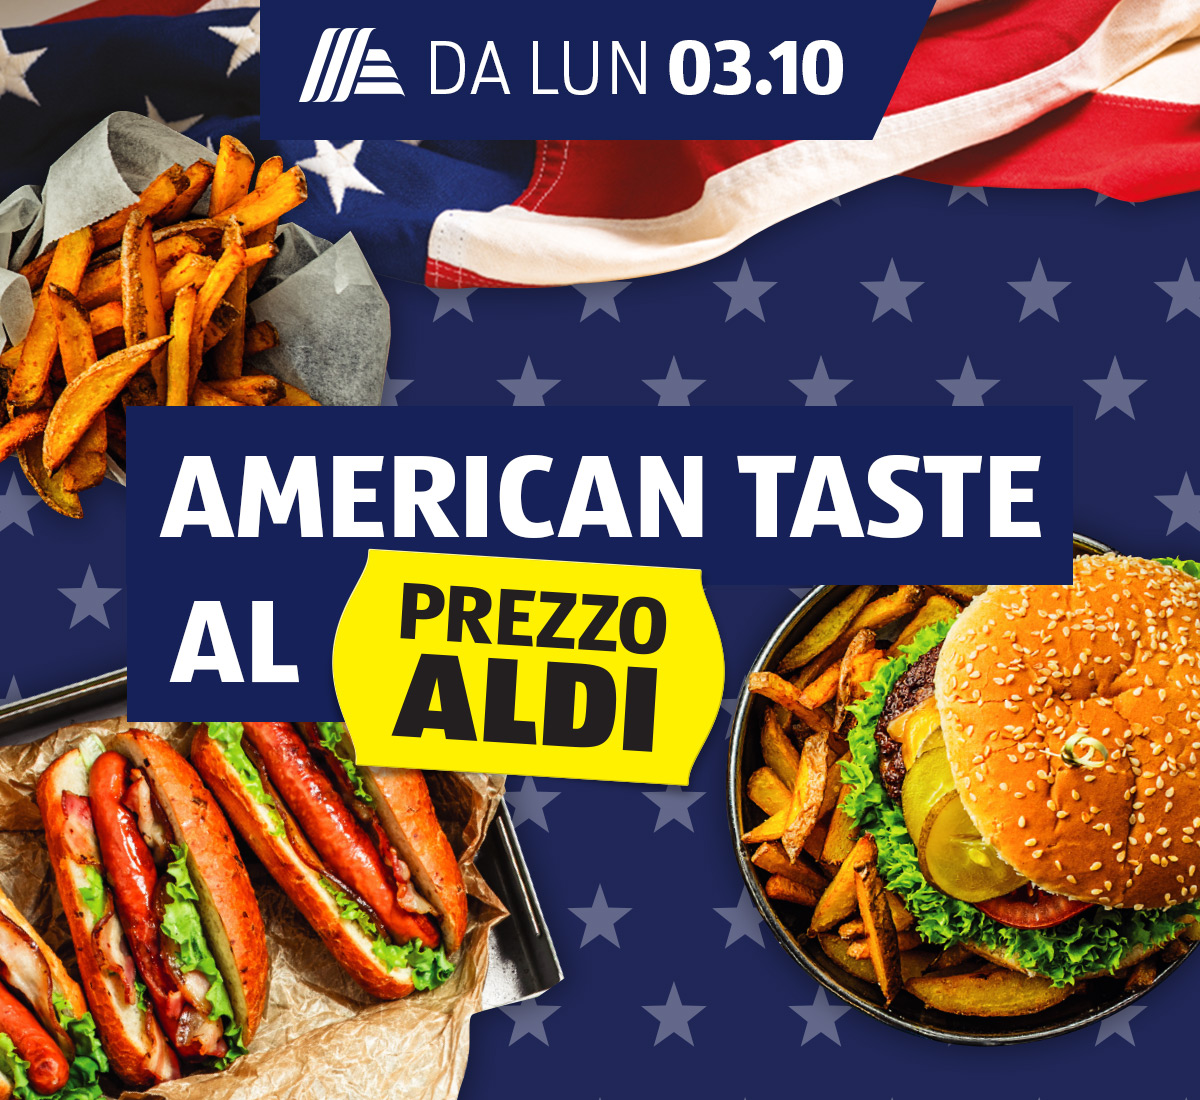 American taste al Prezzo ALDI